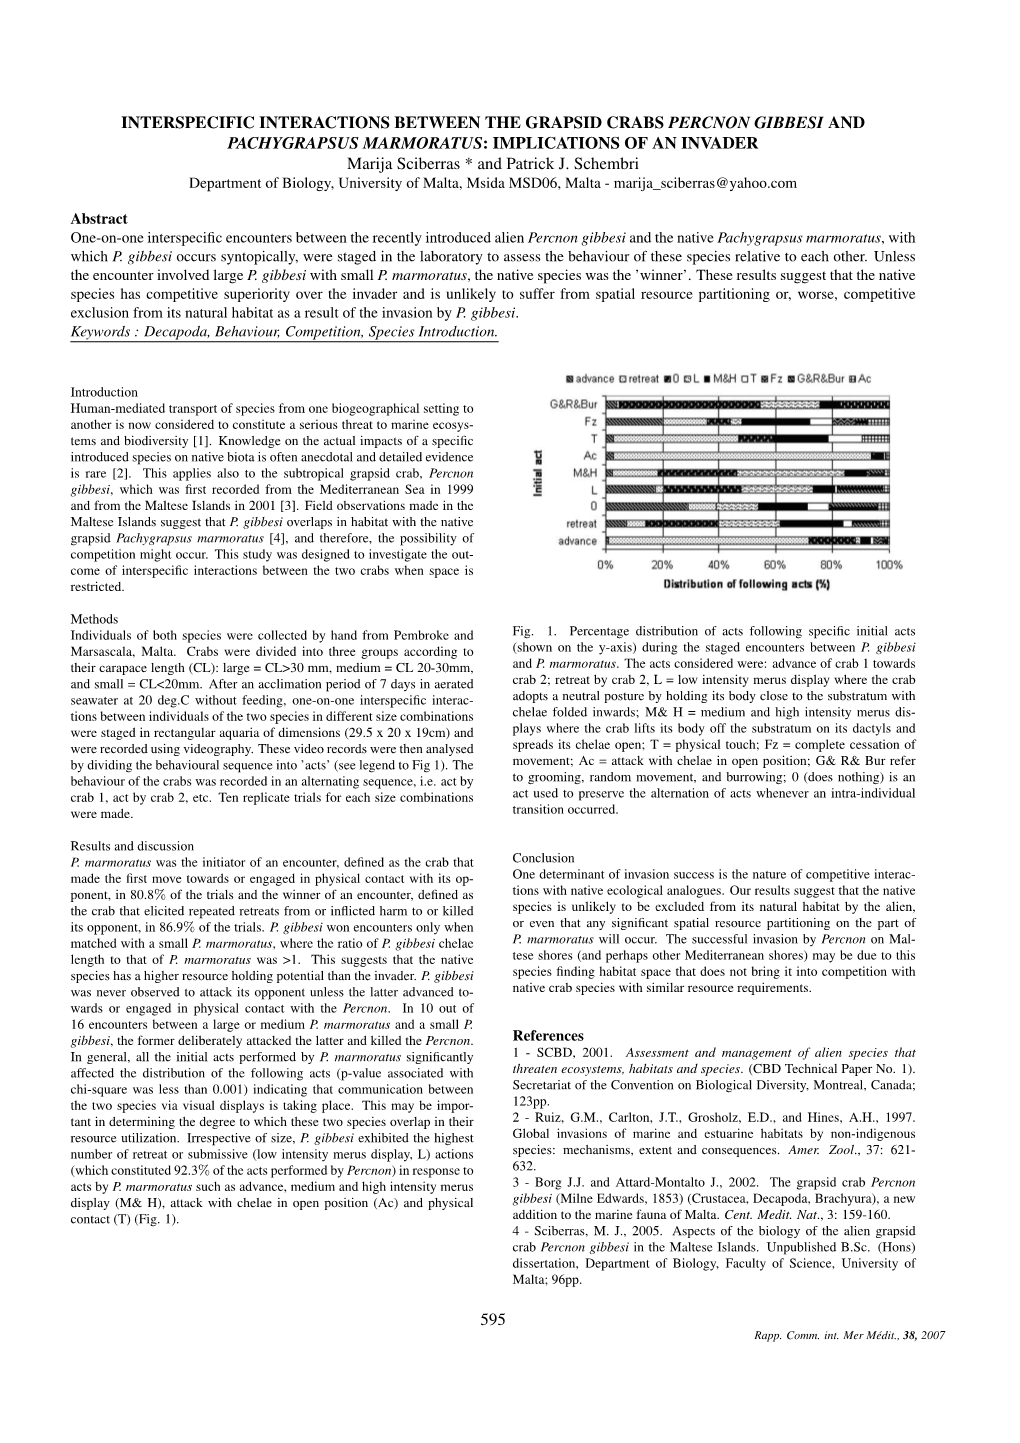 Sciberras & Schembri (2007) CIESM P595 (Percnon Interactions).Pdf